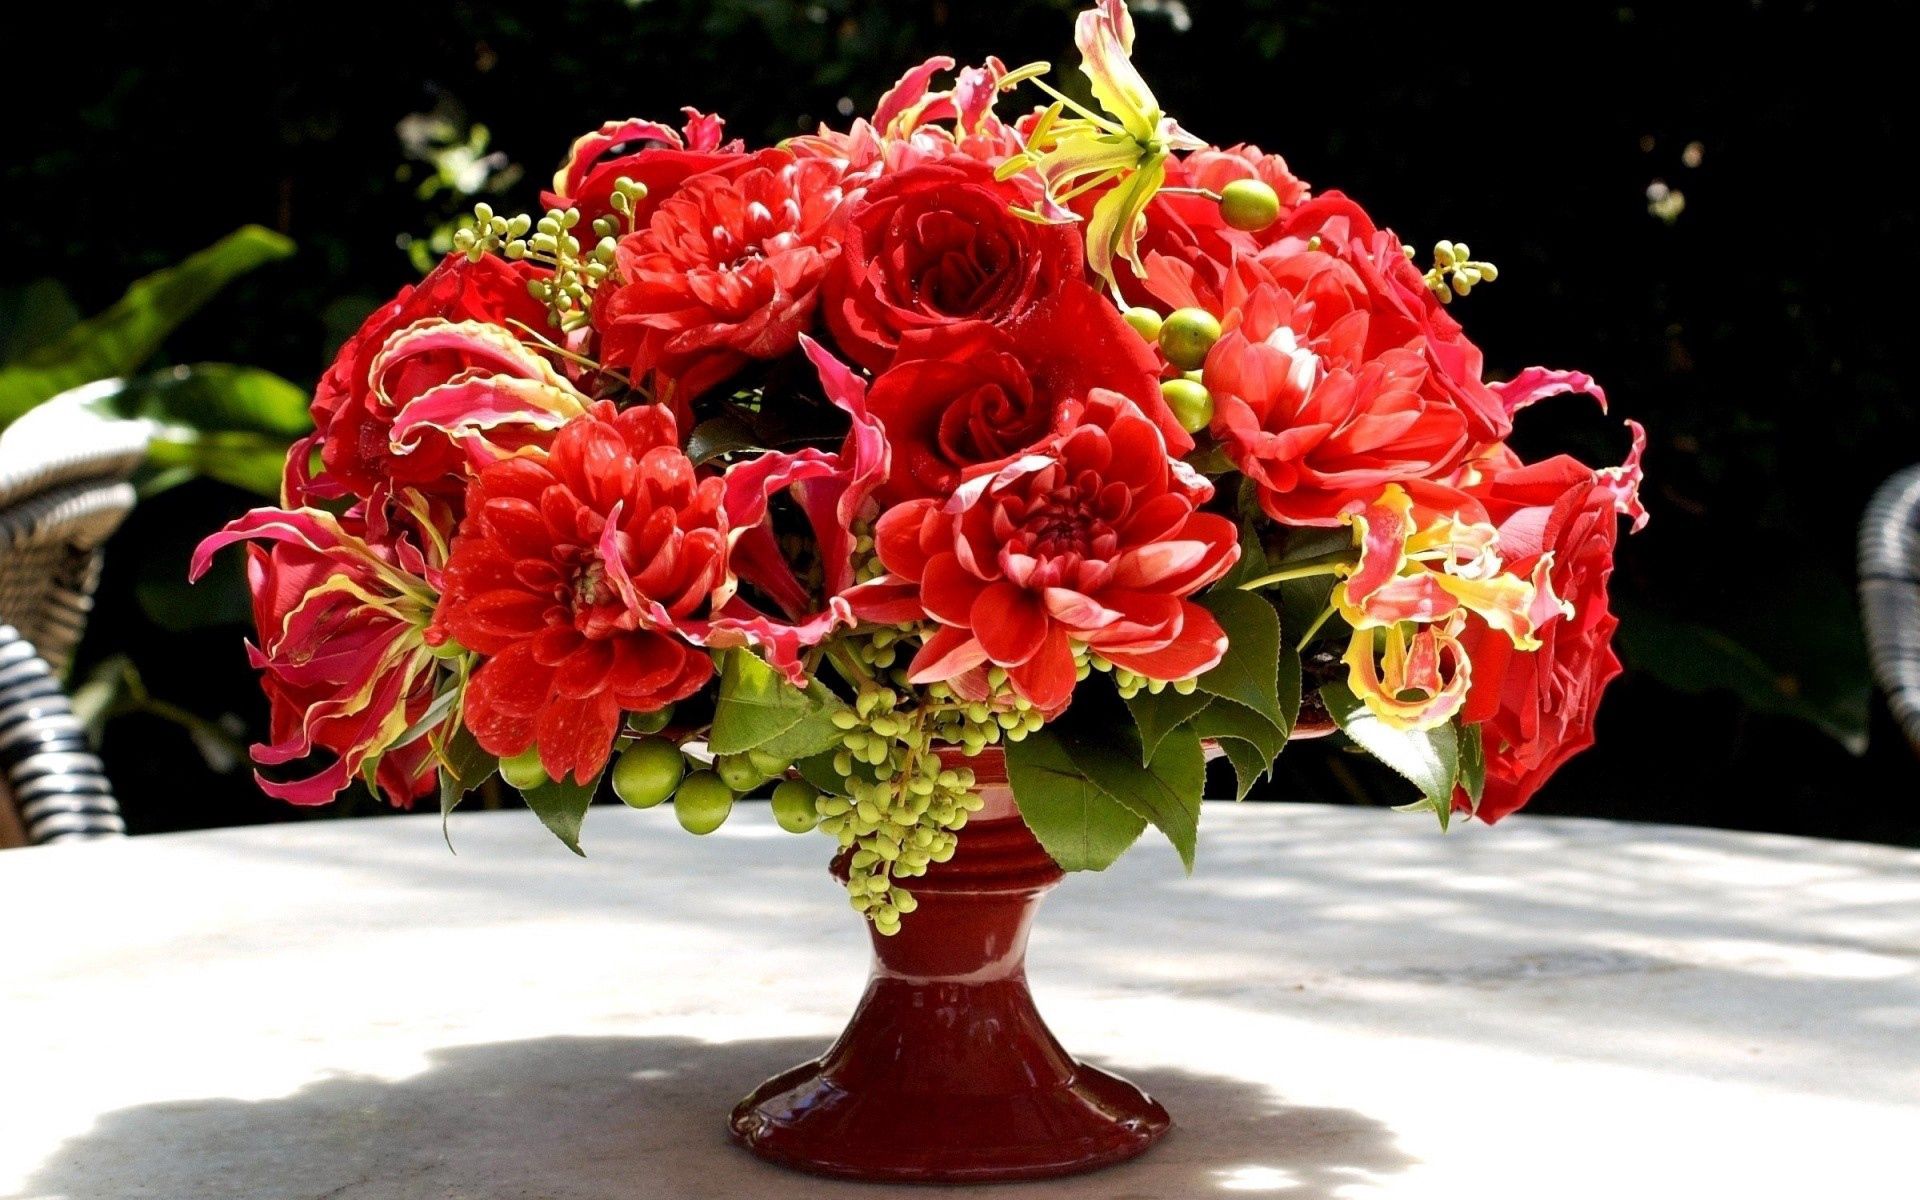 miscellaneous, miscellanea, flowers, bouquet, vase